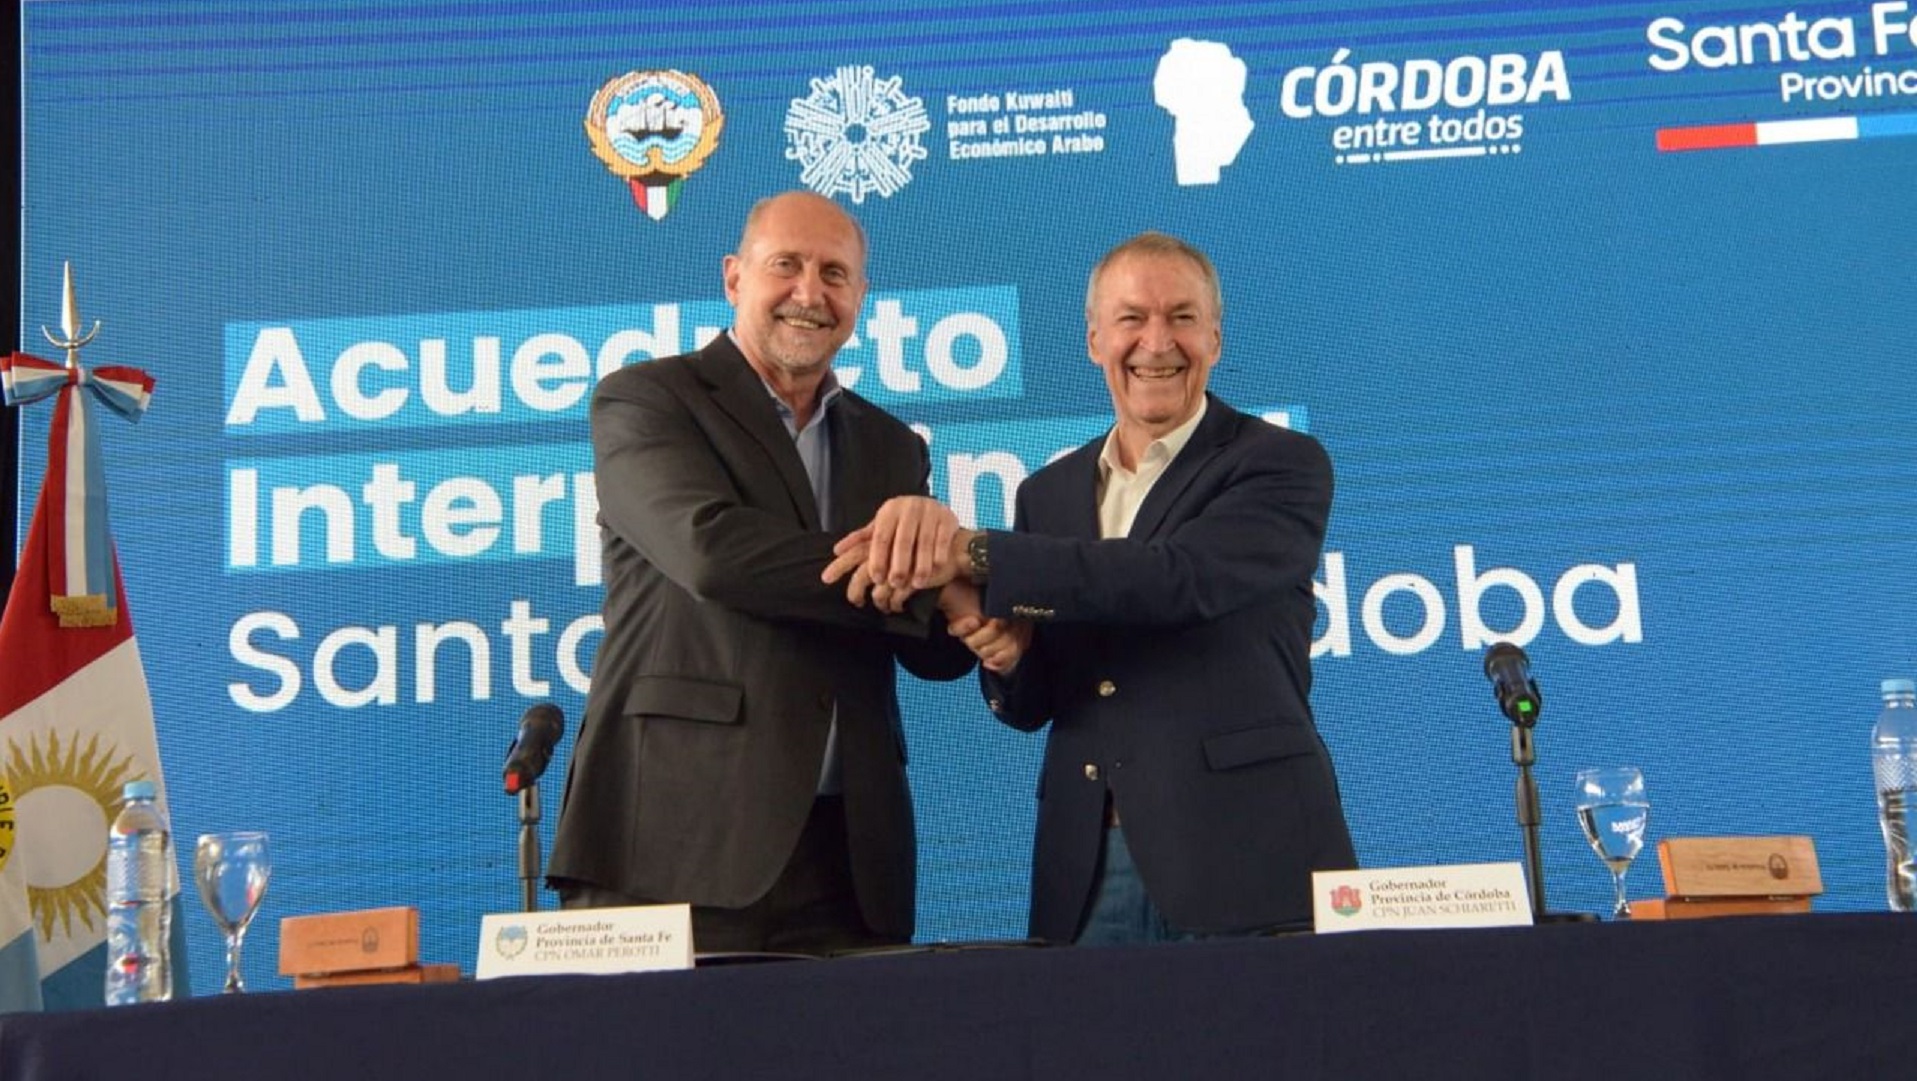 Perotti and Schiaretti signed an interprovincial agreement